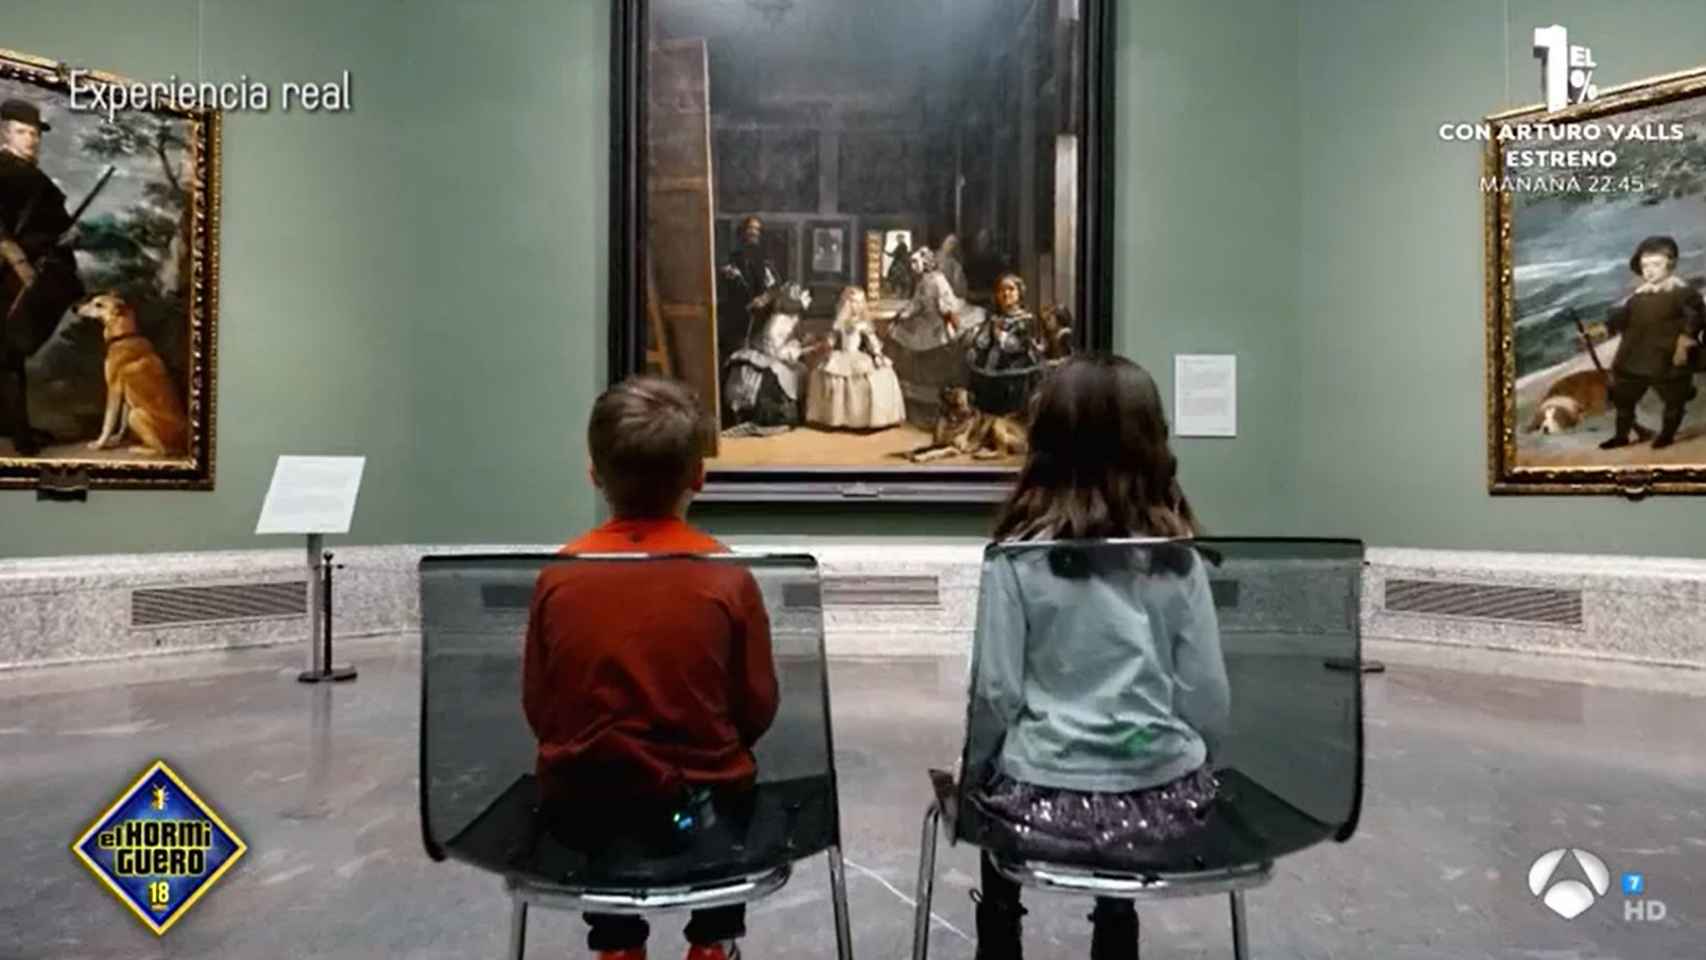 'El Hormiguero' triunfa entre los más pequeños de la casa: así fue el genial experimento en el Museo del Prado